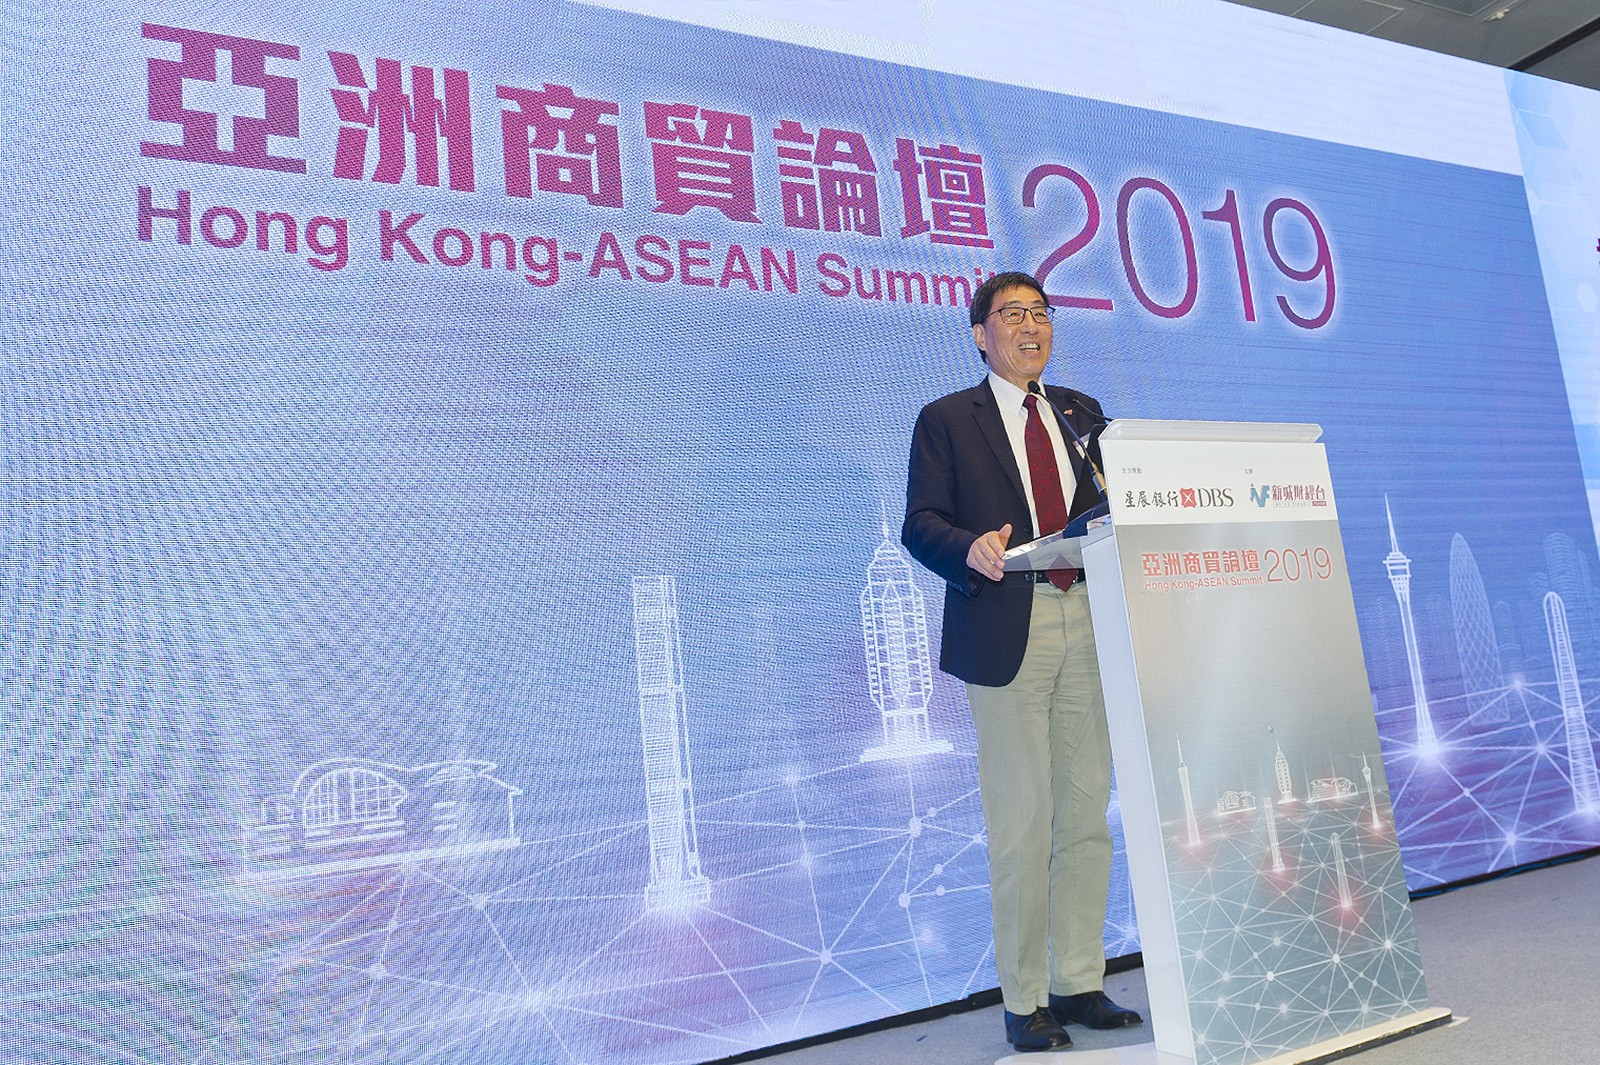 郭校長在《亞洲商貿論壇2019》以「香港如何推動創科產業發展」為題演講。論壇吸引約200名嘉賓出席，包括亞洲國家的領事、政府和商界的代表。